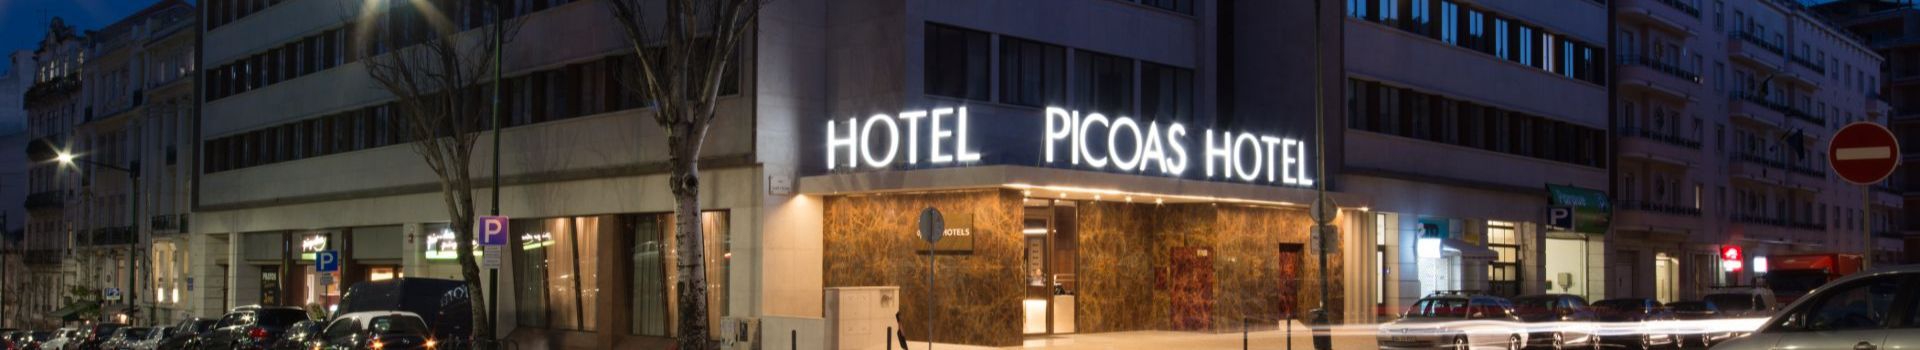 Gallery VIP Executive Picoas Hotel Lisbon